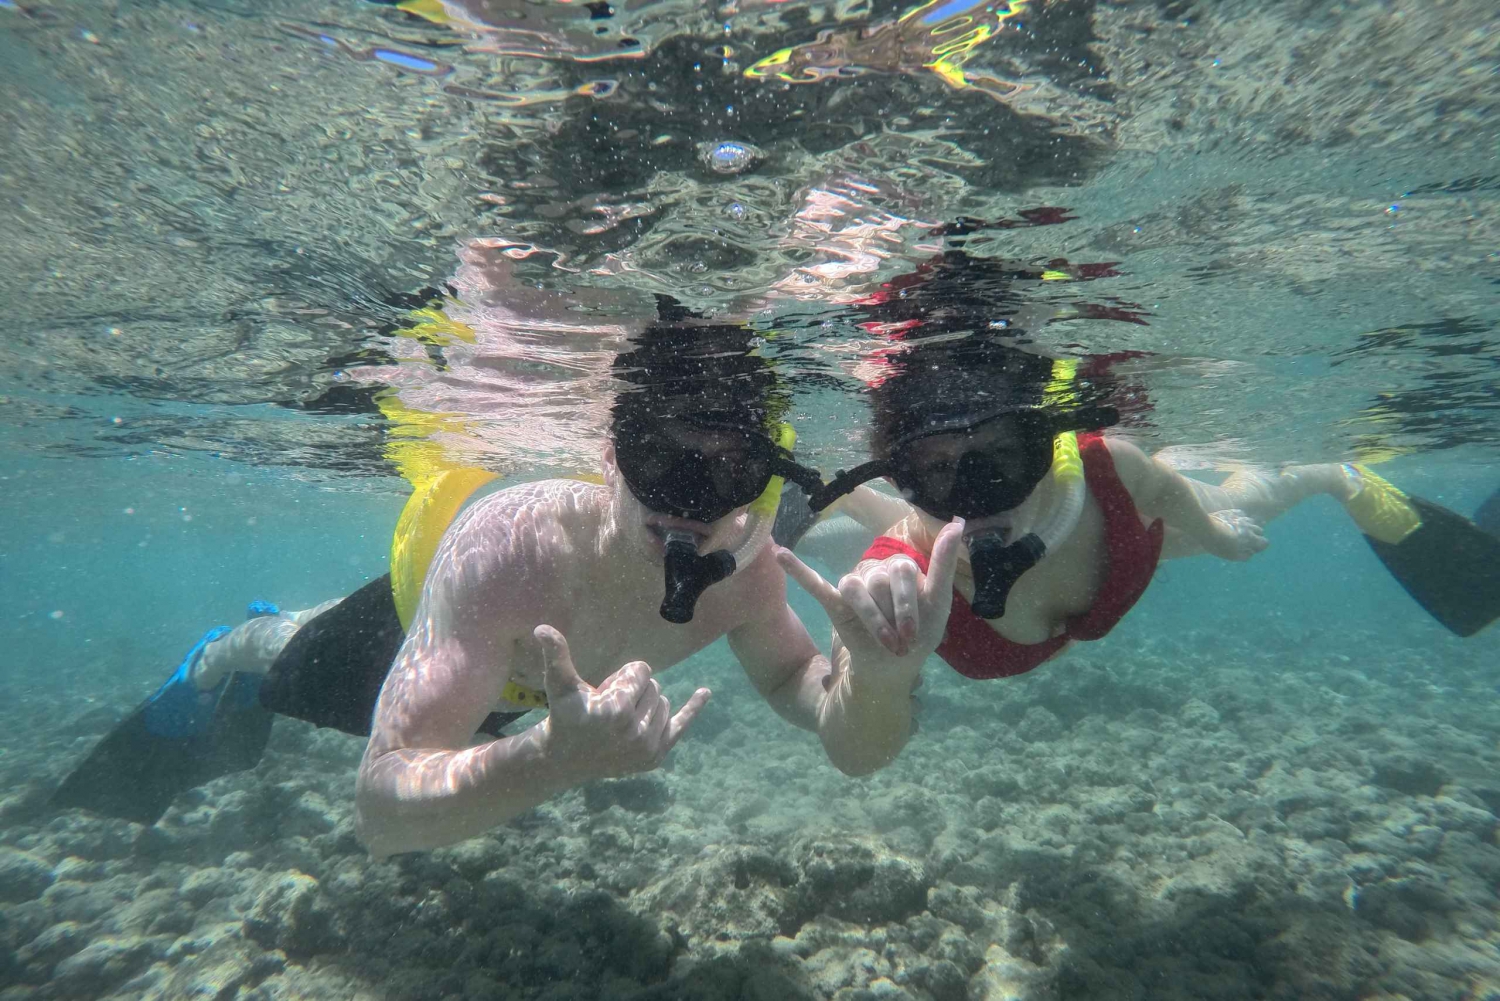 Oahu: Hanauma Bay Guided Snorkel Tour